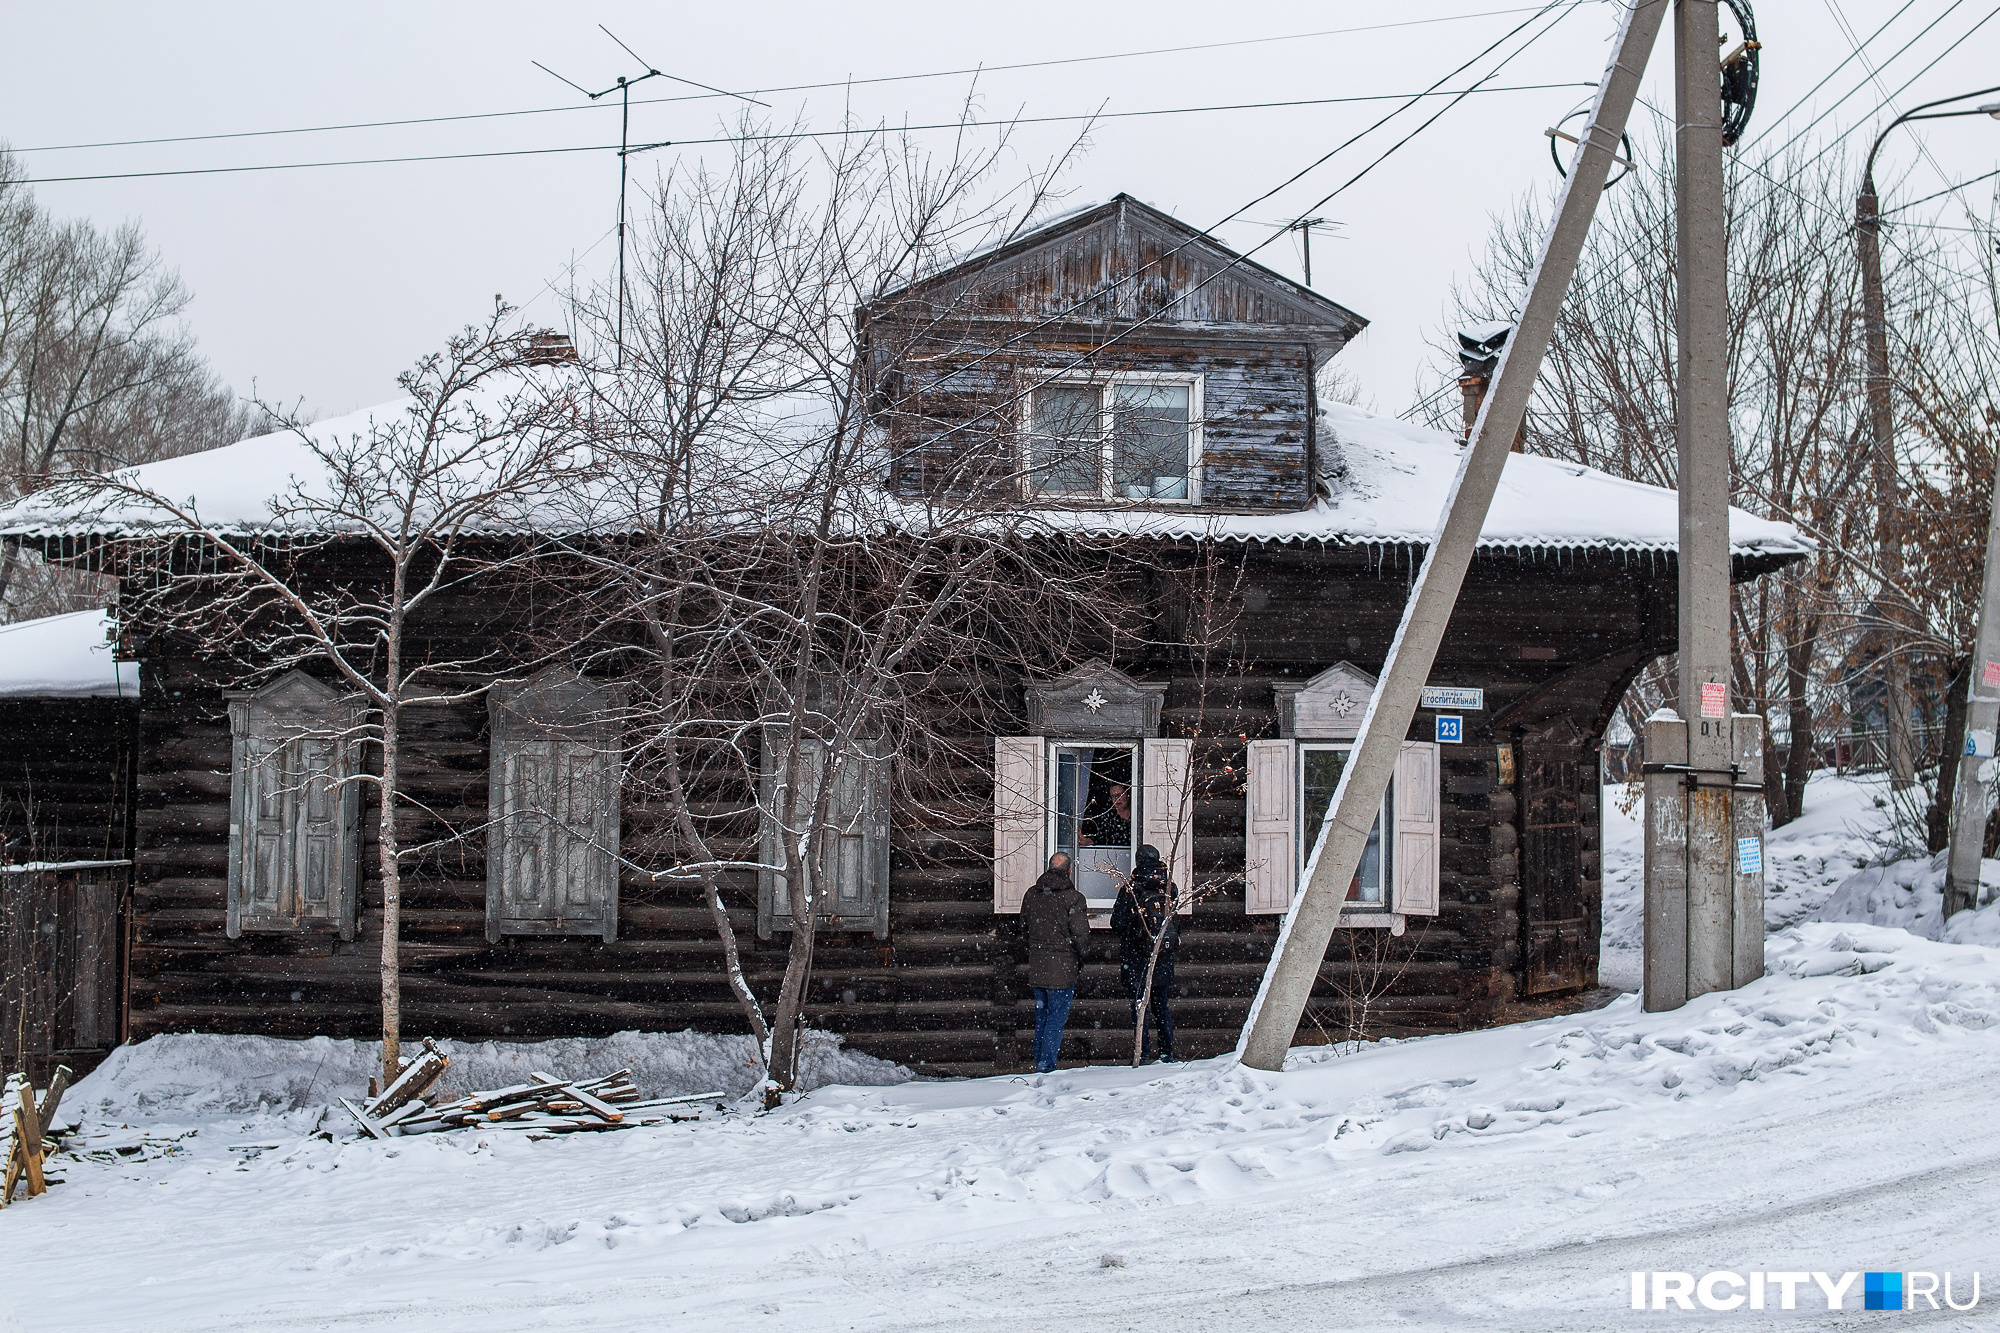 В конце 1920-х годов здесь жил директор местного зверохозяйства Илларион Комаров. Его потомки живут в этом доме до сих пор